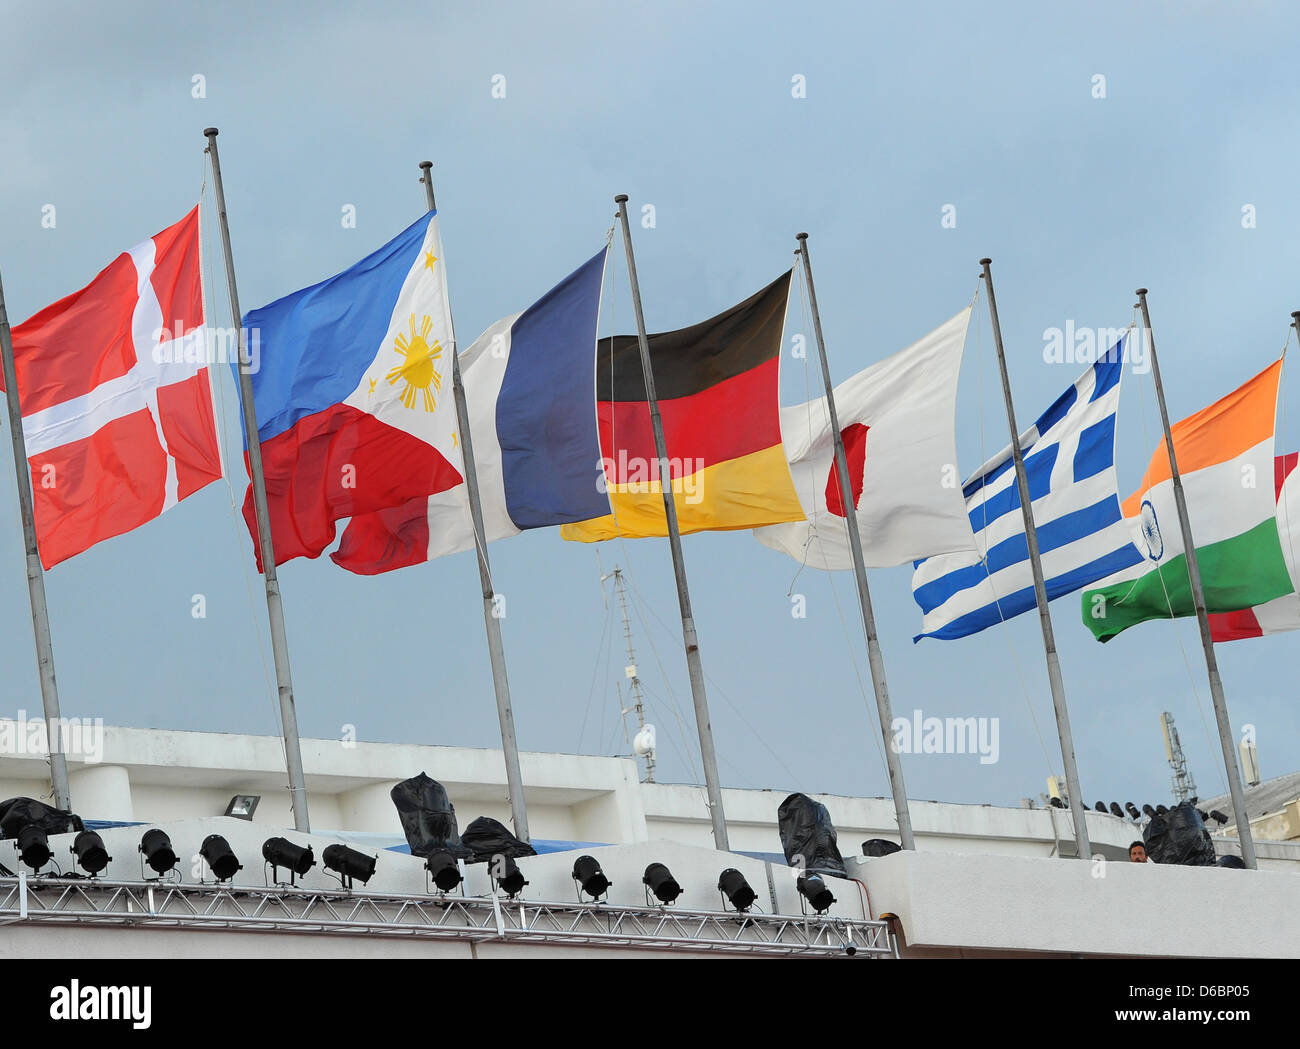 Banderas de varios países volar fuera del Palazzo del Cinema durante la 69ª edición del Festival Internacional de Cine de Venecia en Venecia, Italia, el 31 de agosto de 2012. Foto: Jens Kalaene Foto de stock